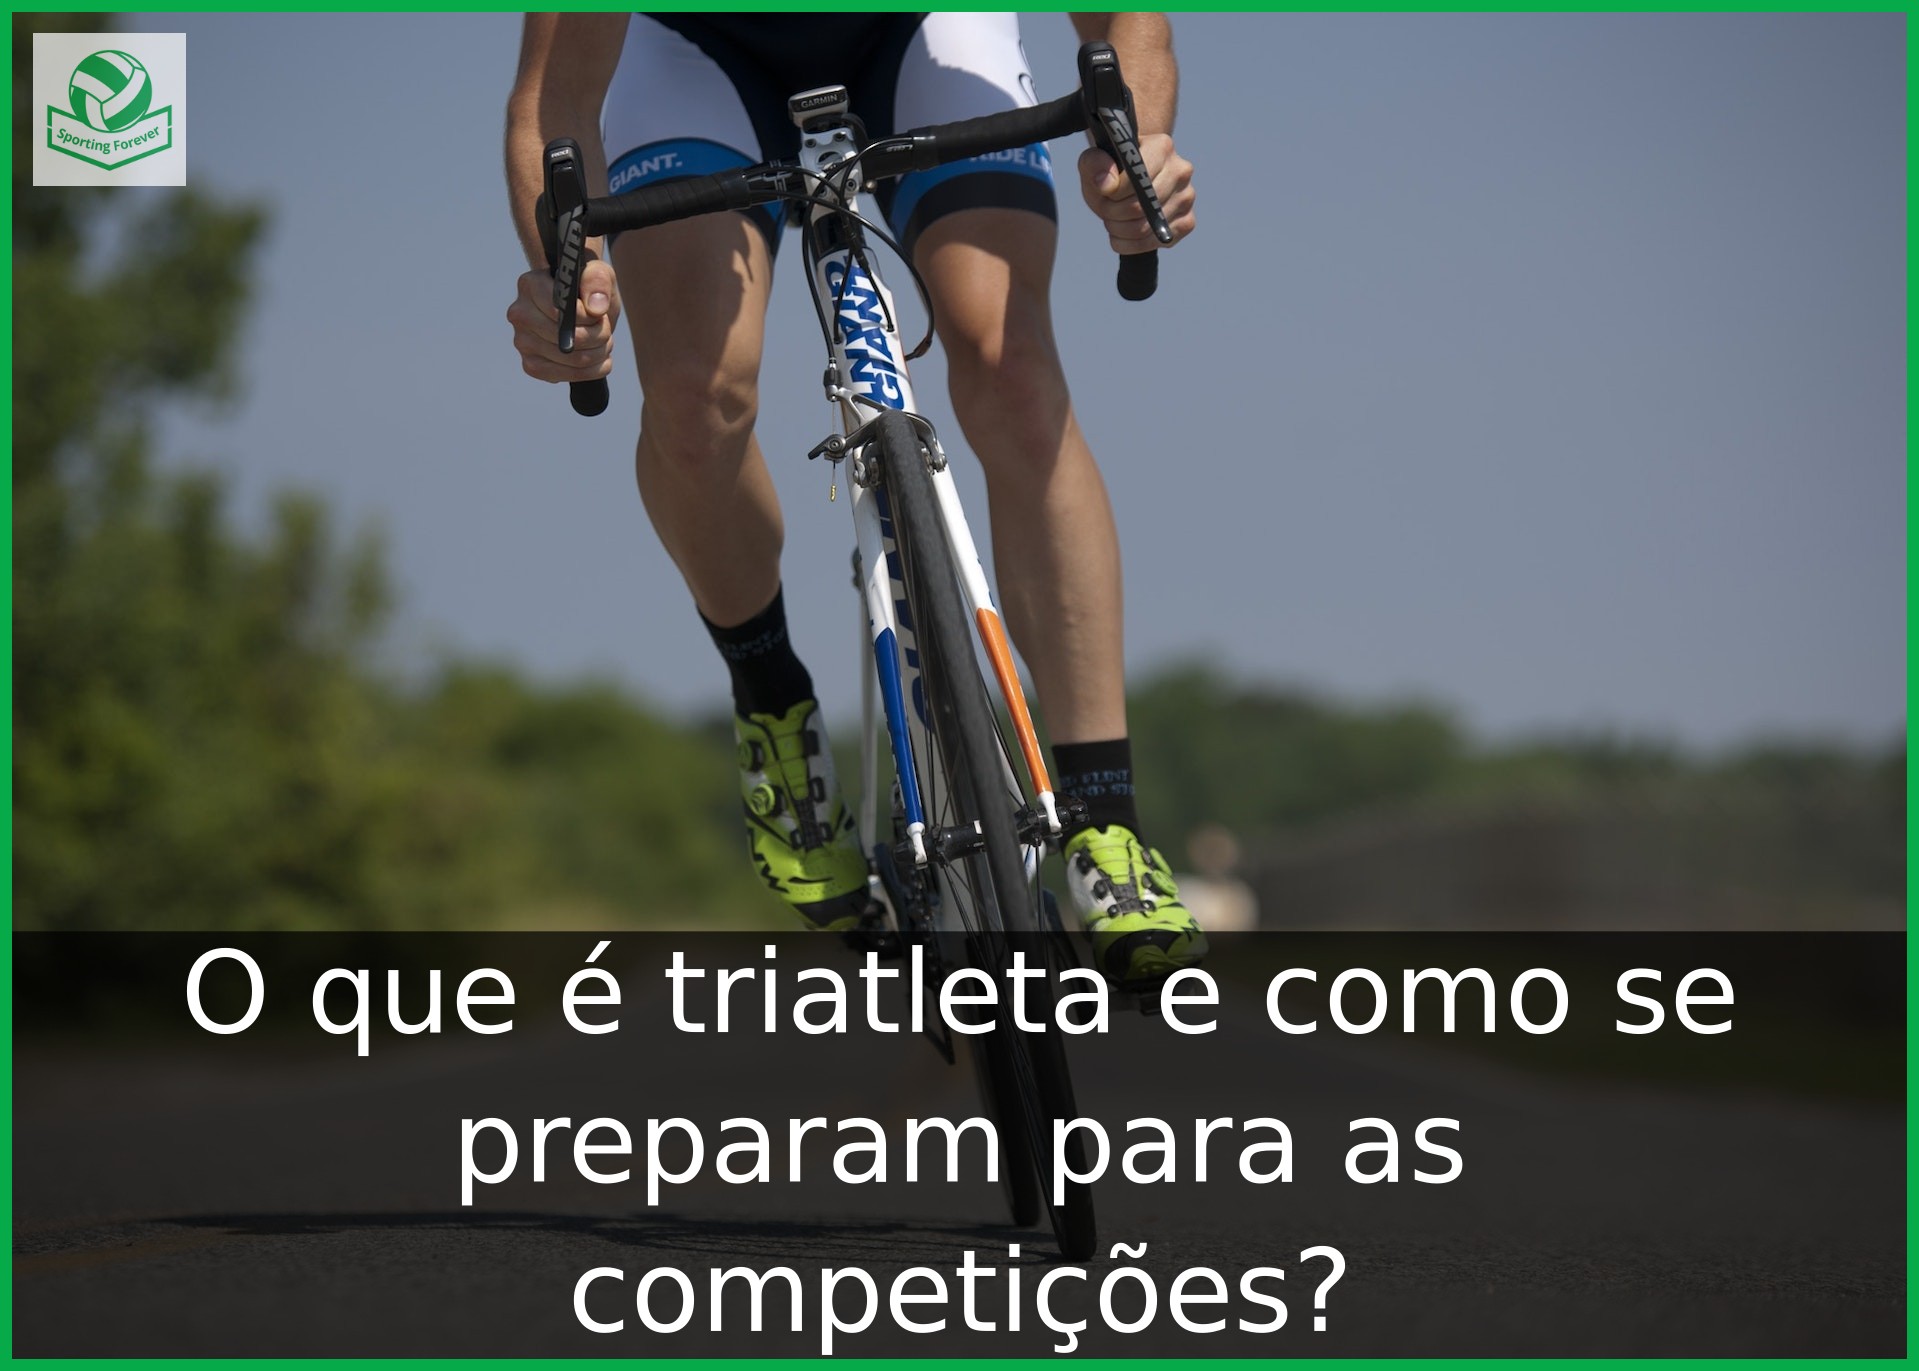 O que é triatleta e como se preparam para as competições?